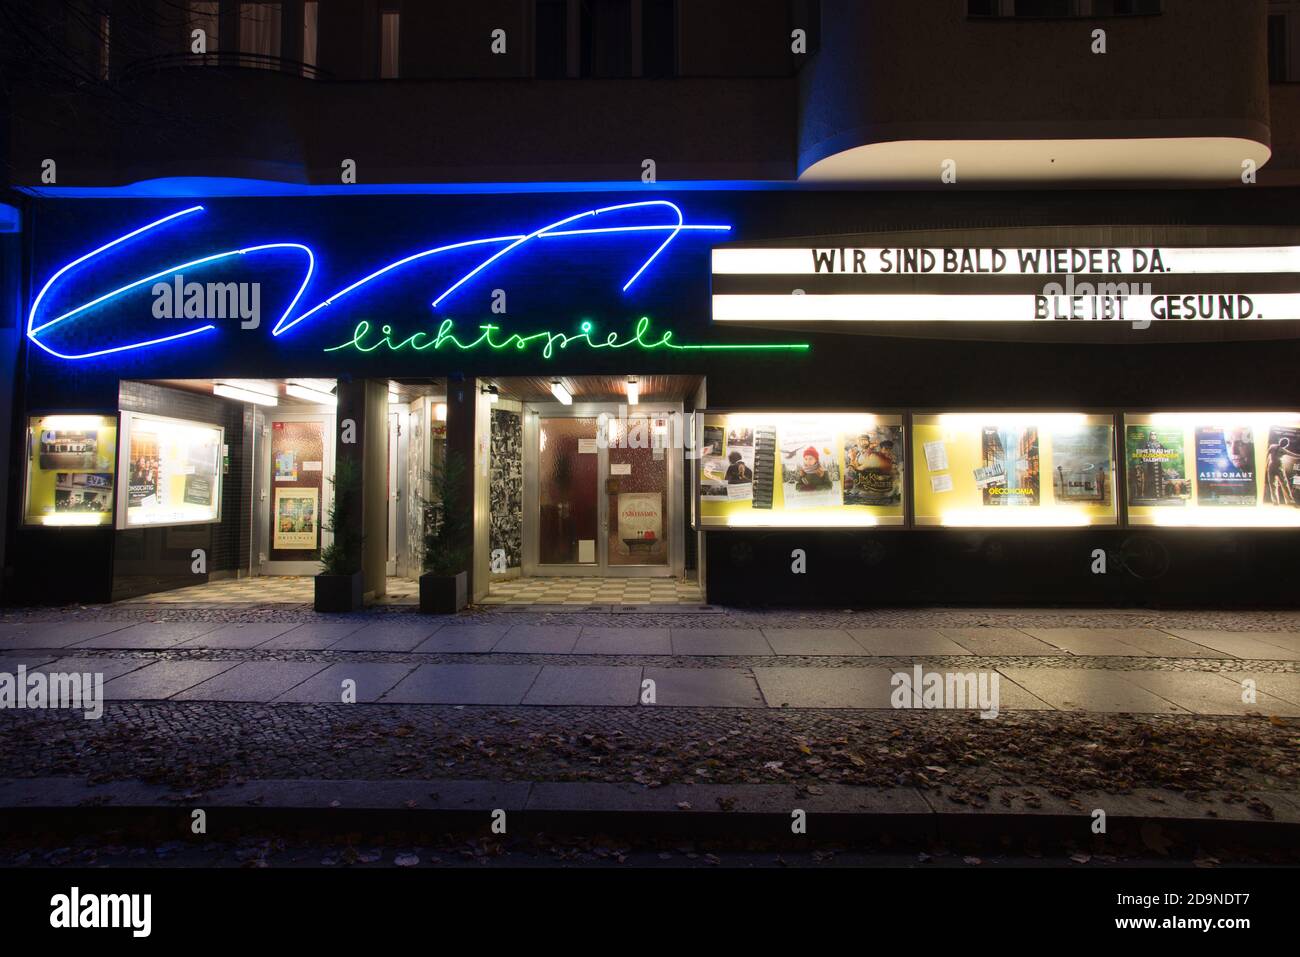 Corona-Nächte in Berlin, Kino im Lockdown - Covid-nights in Berlin, cinema during lockdown Stock Photo